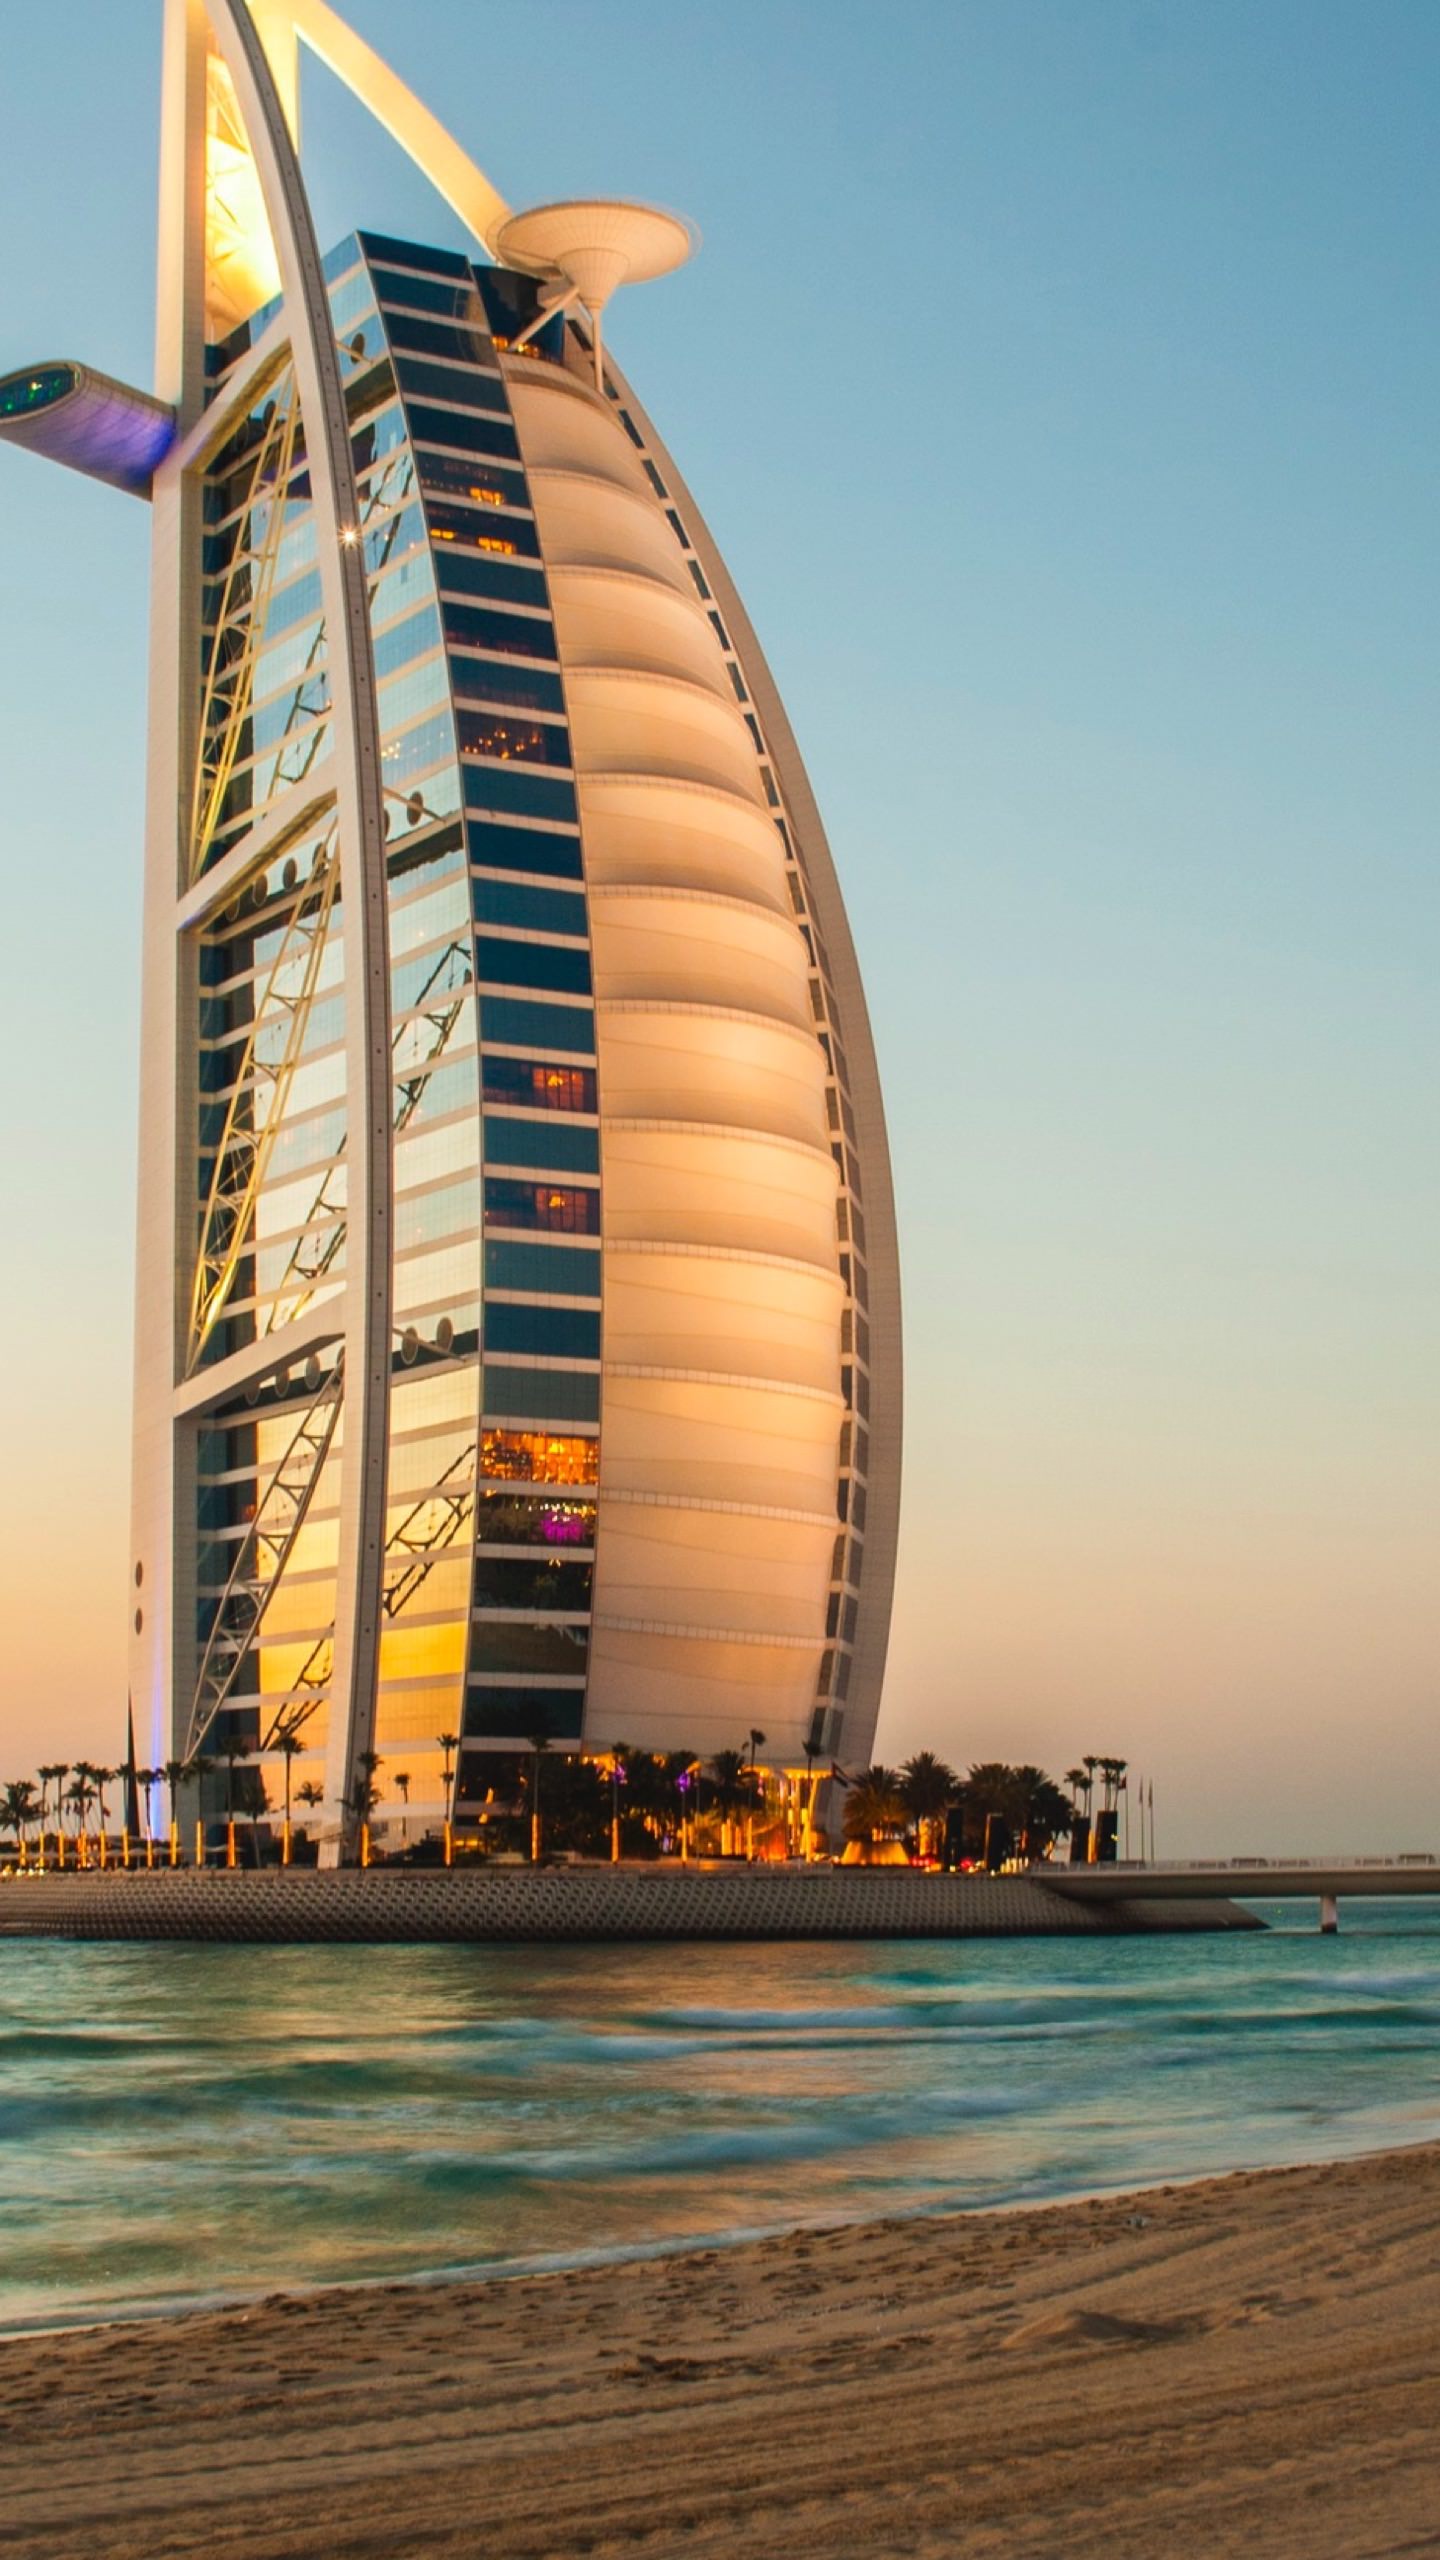 Landscape sea Hotel BURJ AL ARAB Dubai | wallpaper.sc SmartPhone